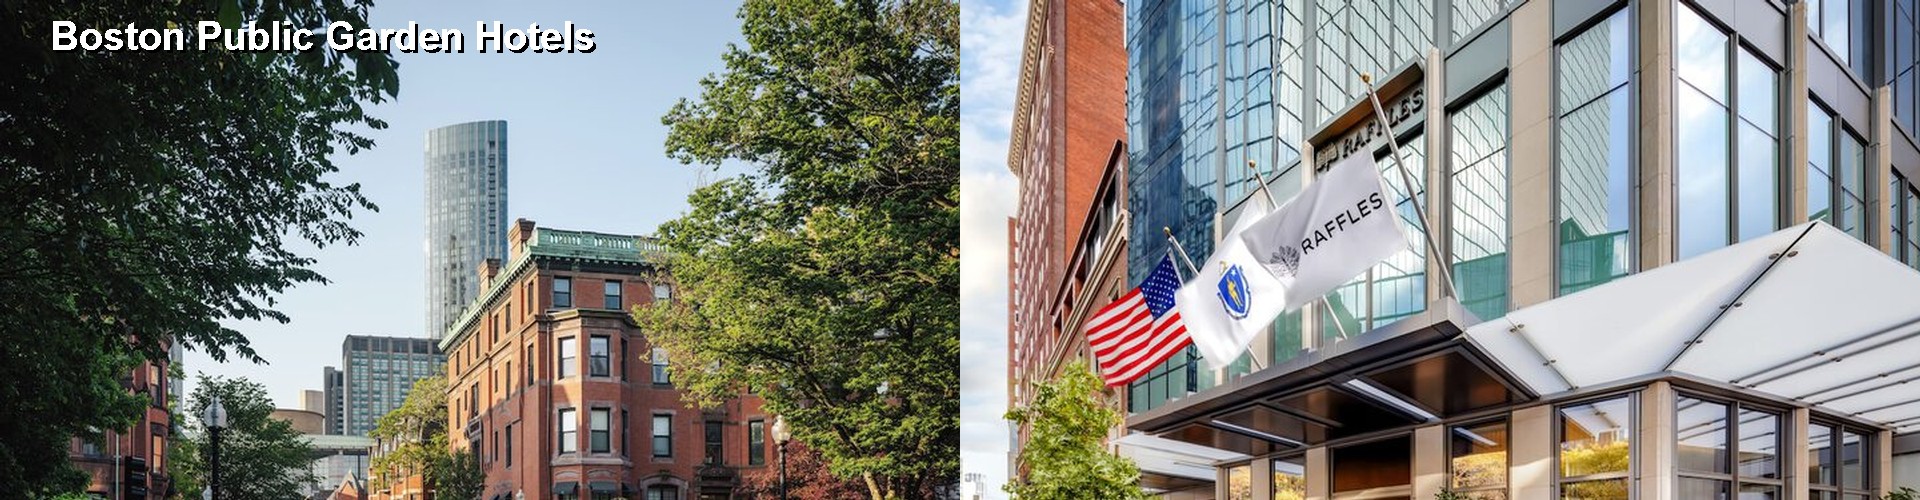 5 Best Hotels near Boston Public Garden